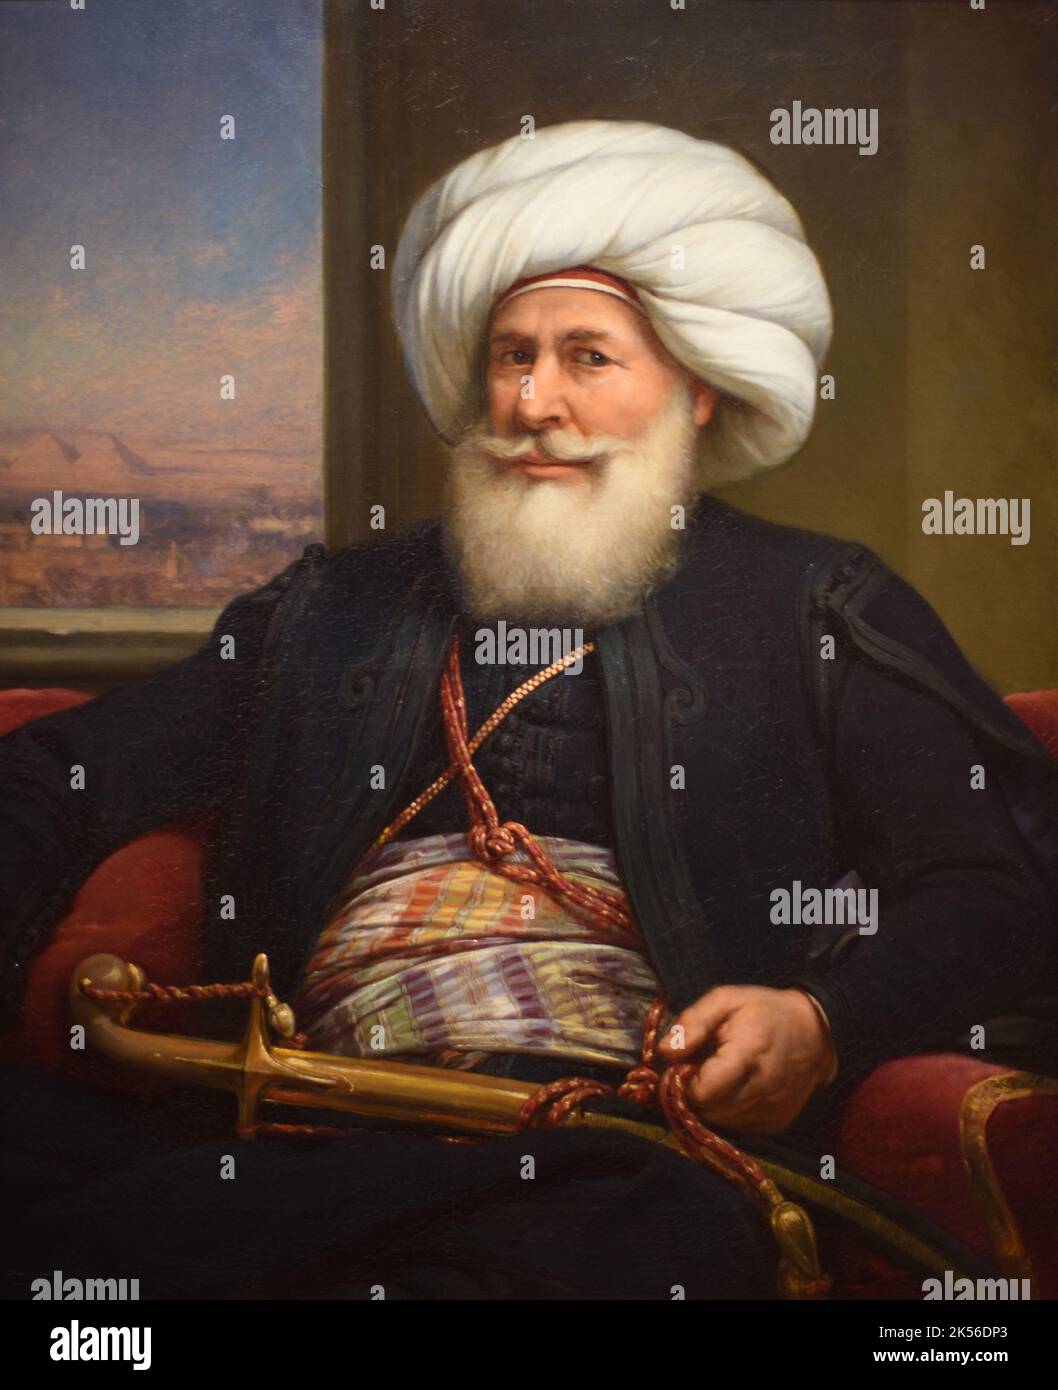 Portrait de Muhammed Ali Pasha, alias Muhammed Ali d'Égypte et du Soudan ou Mehmet Ali Pasha (1769-1849) était un gouverneur ottoman albanais et un dirigeant de facto de l'Égypte entre 1805 et 1848. Peinture à l'huile (1841) par Louis Charles Auguste Couder Banque D'Images